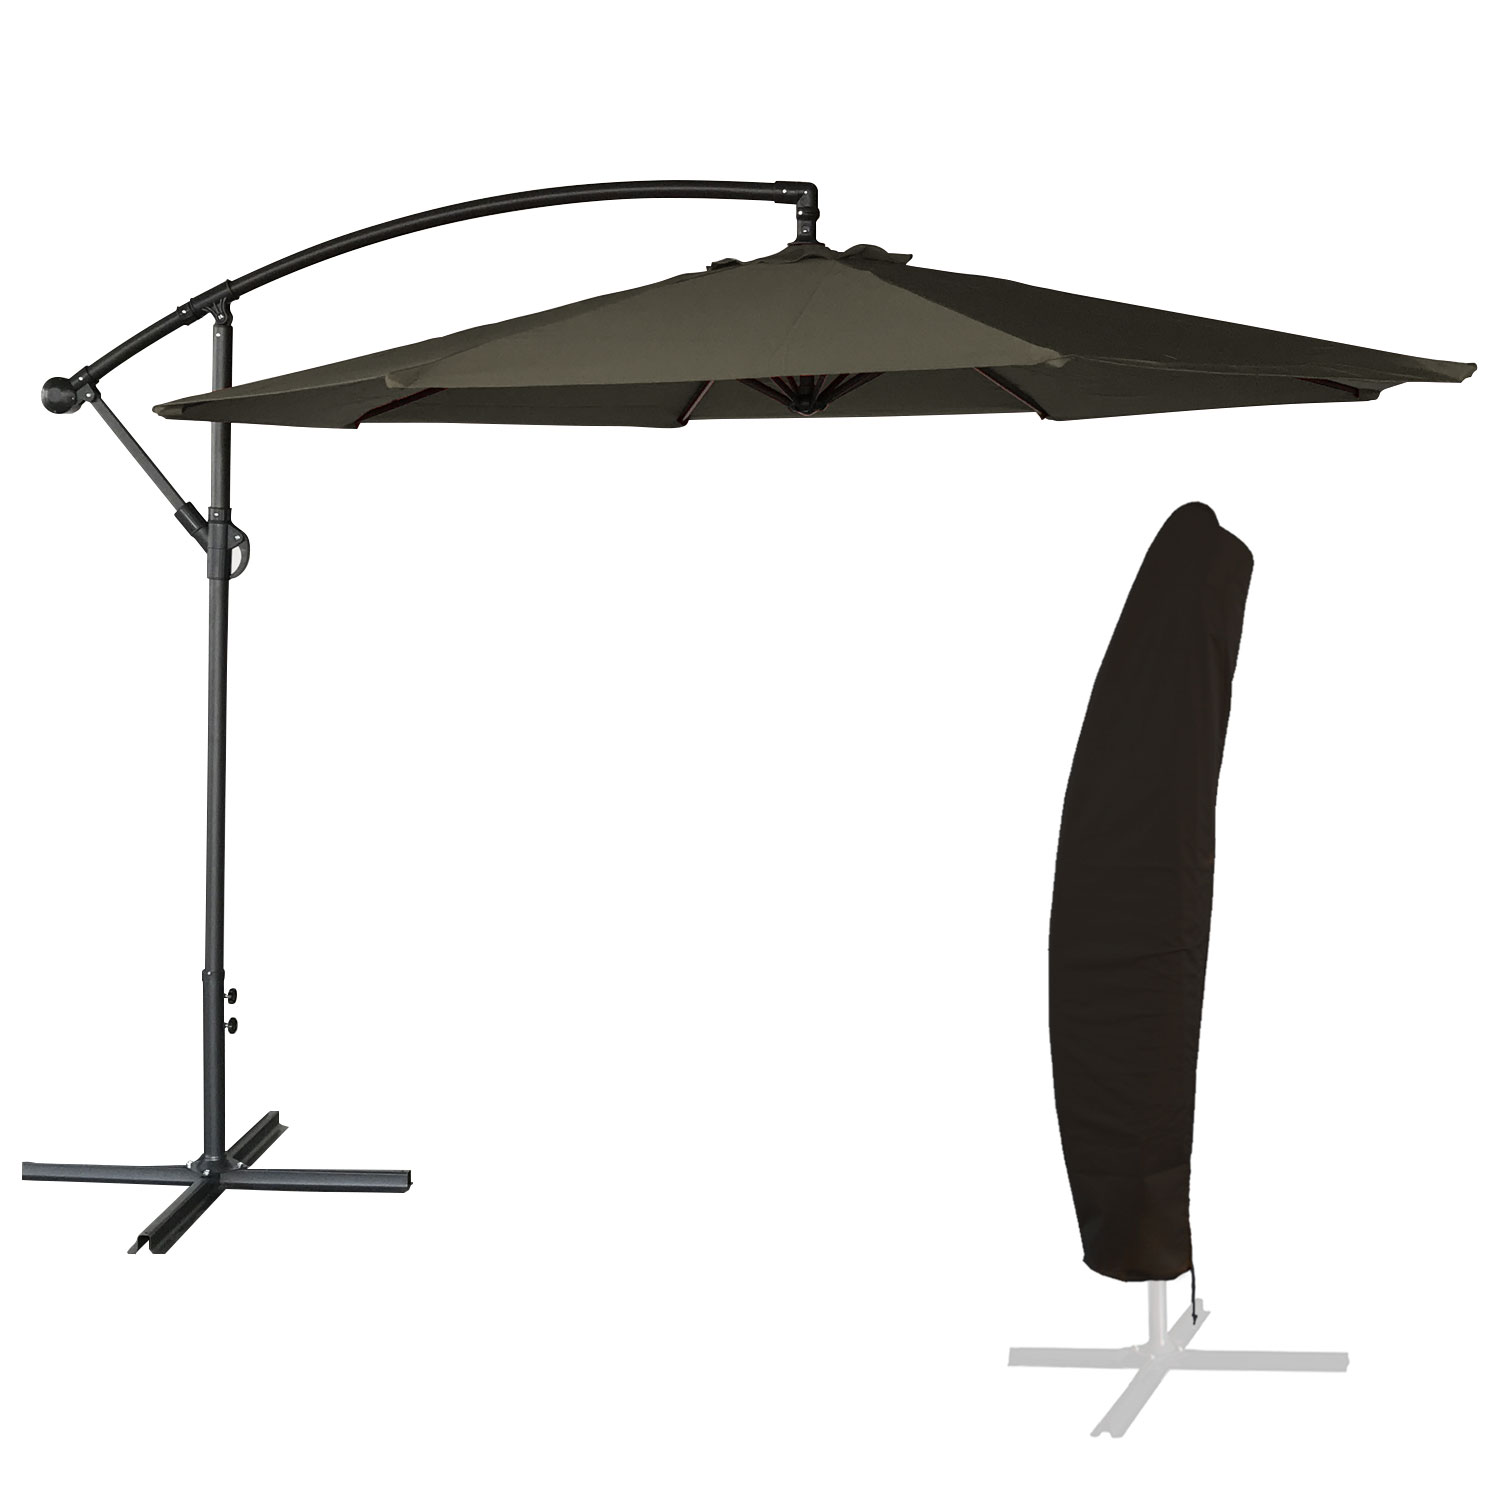 OAHU ombrellone rotondo diametro 3m grigio + copertura